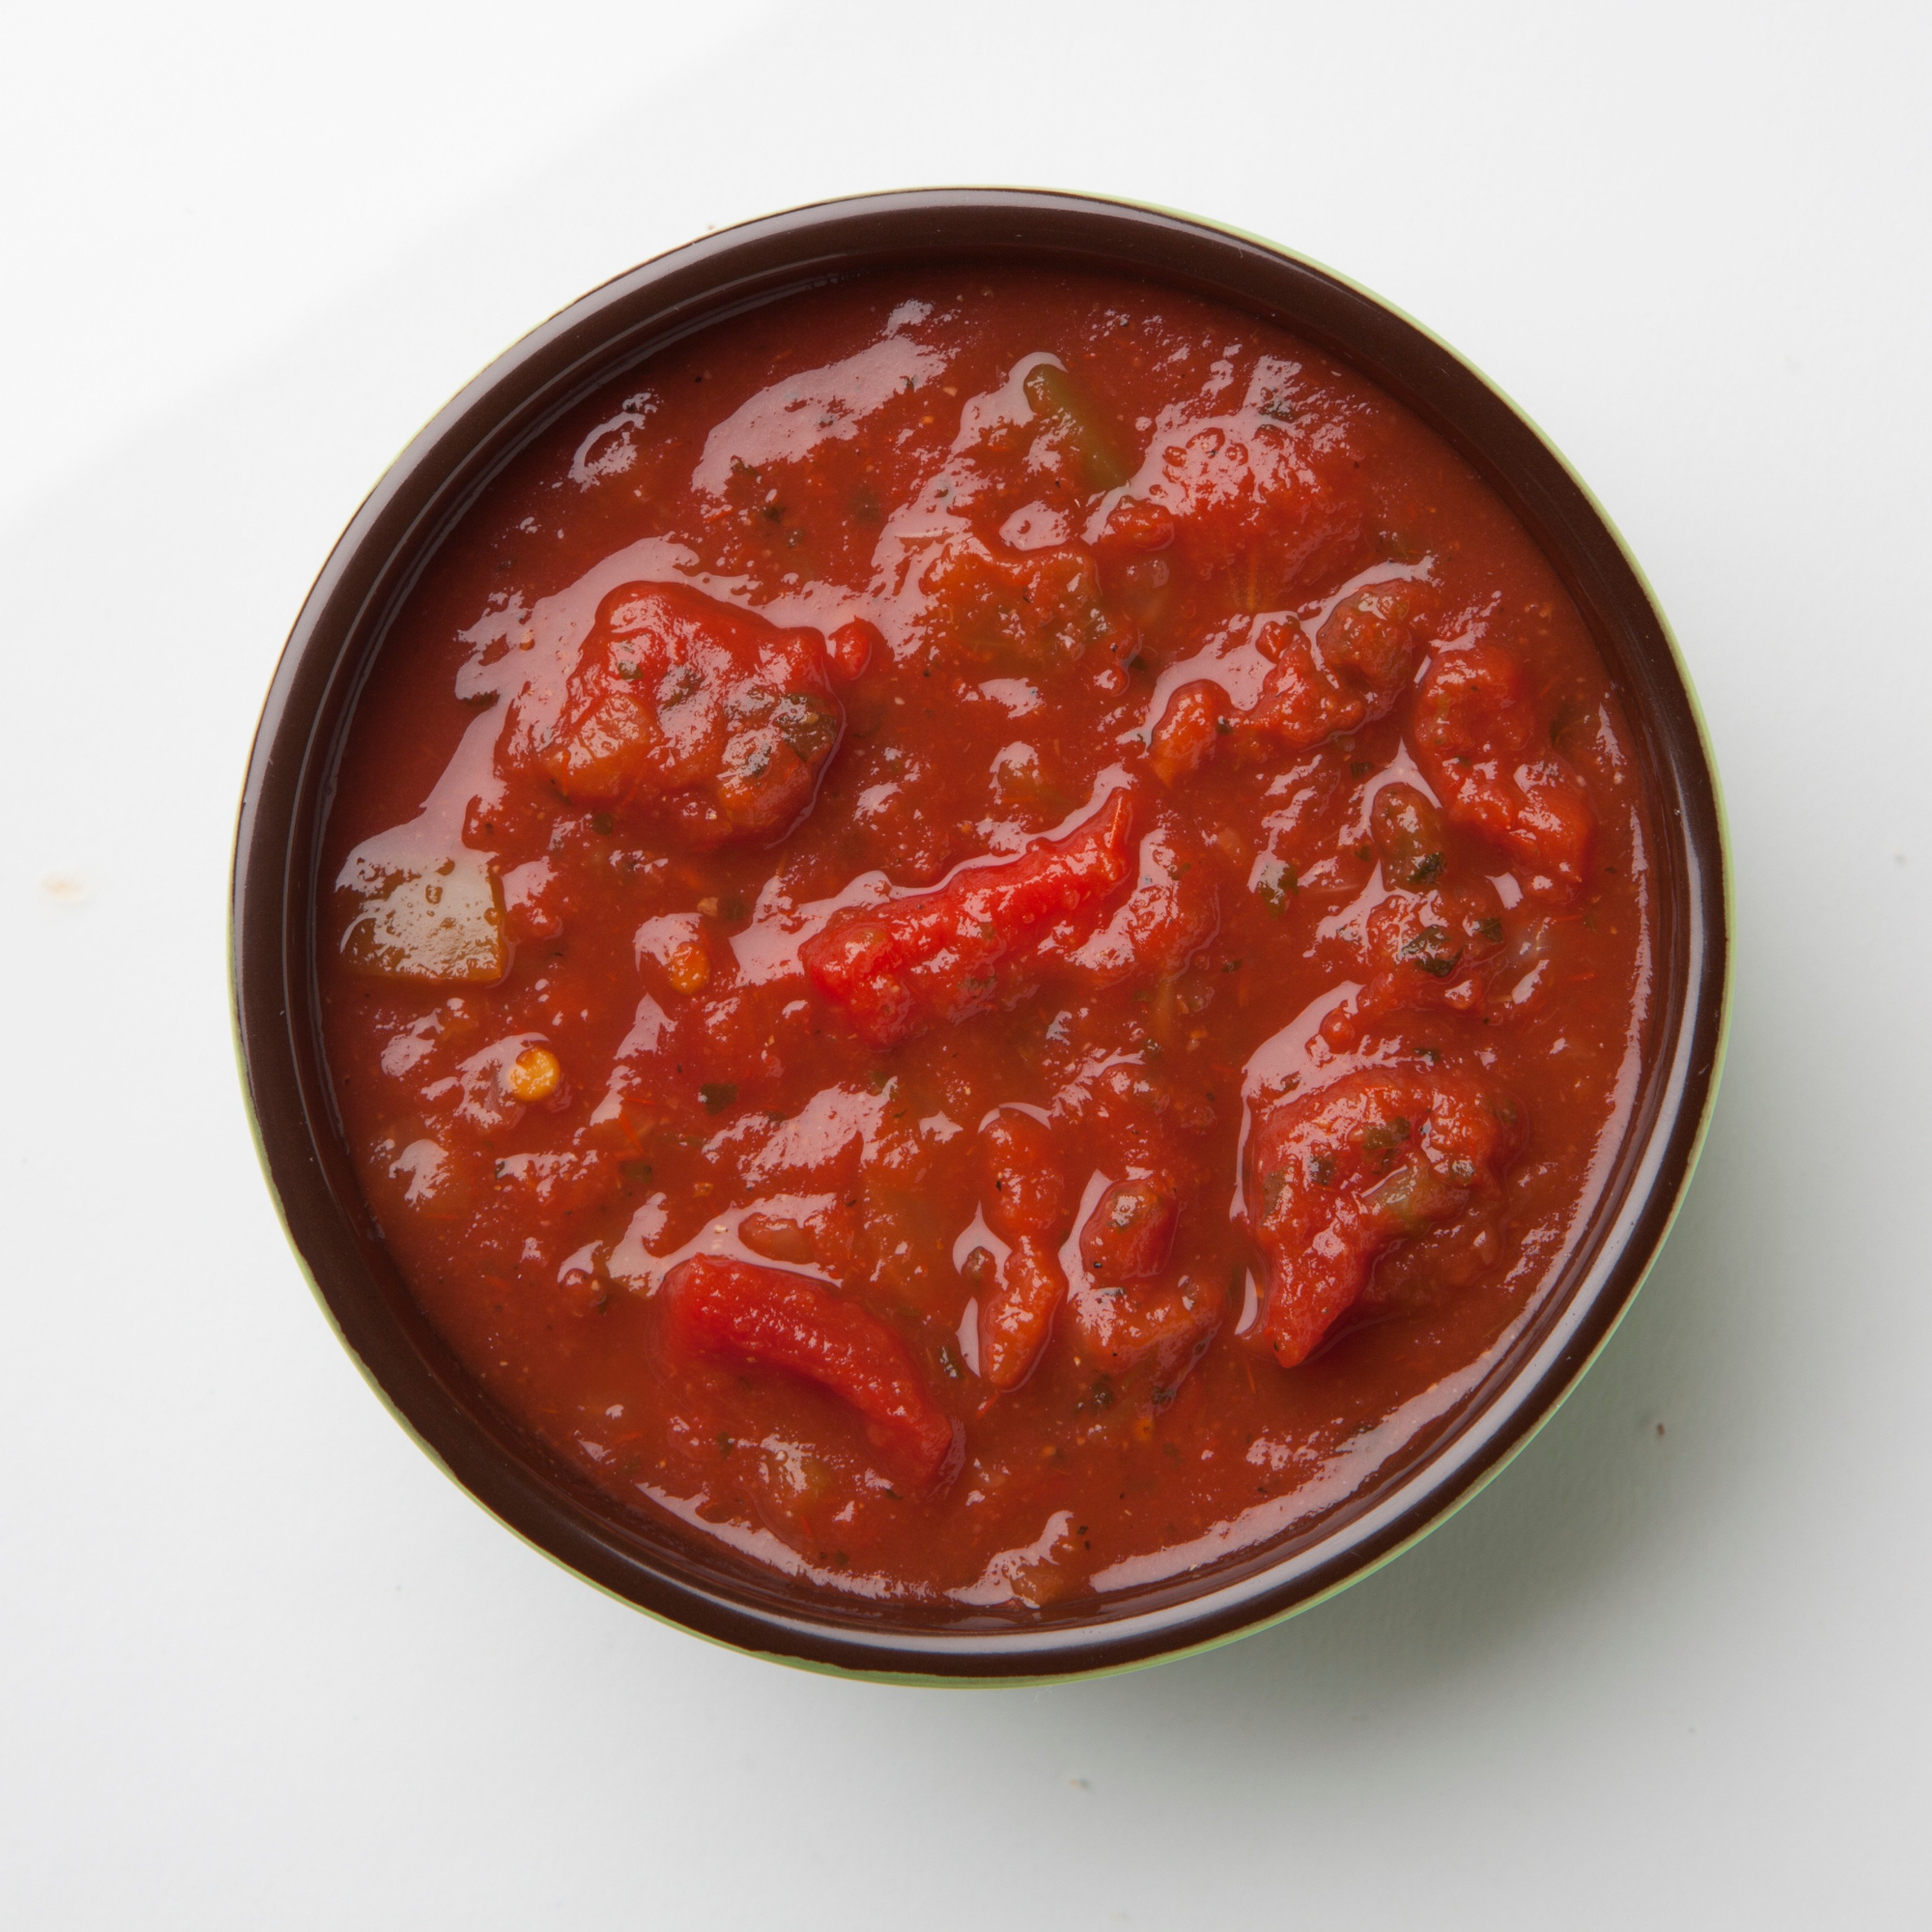 томатный соус для пиццы из томатной пасты и майонеза фото 71